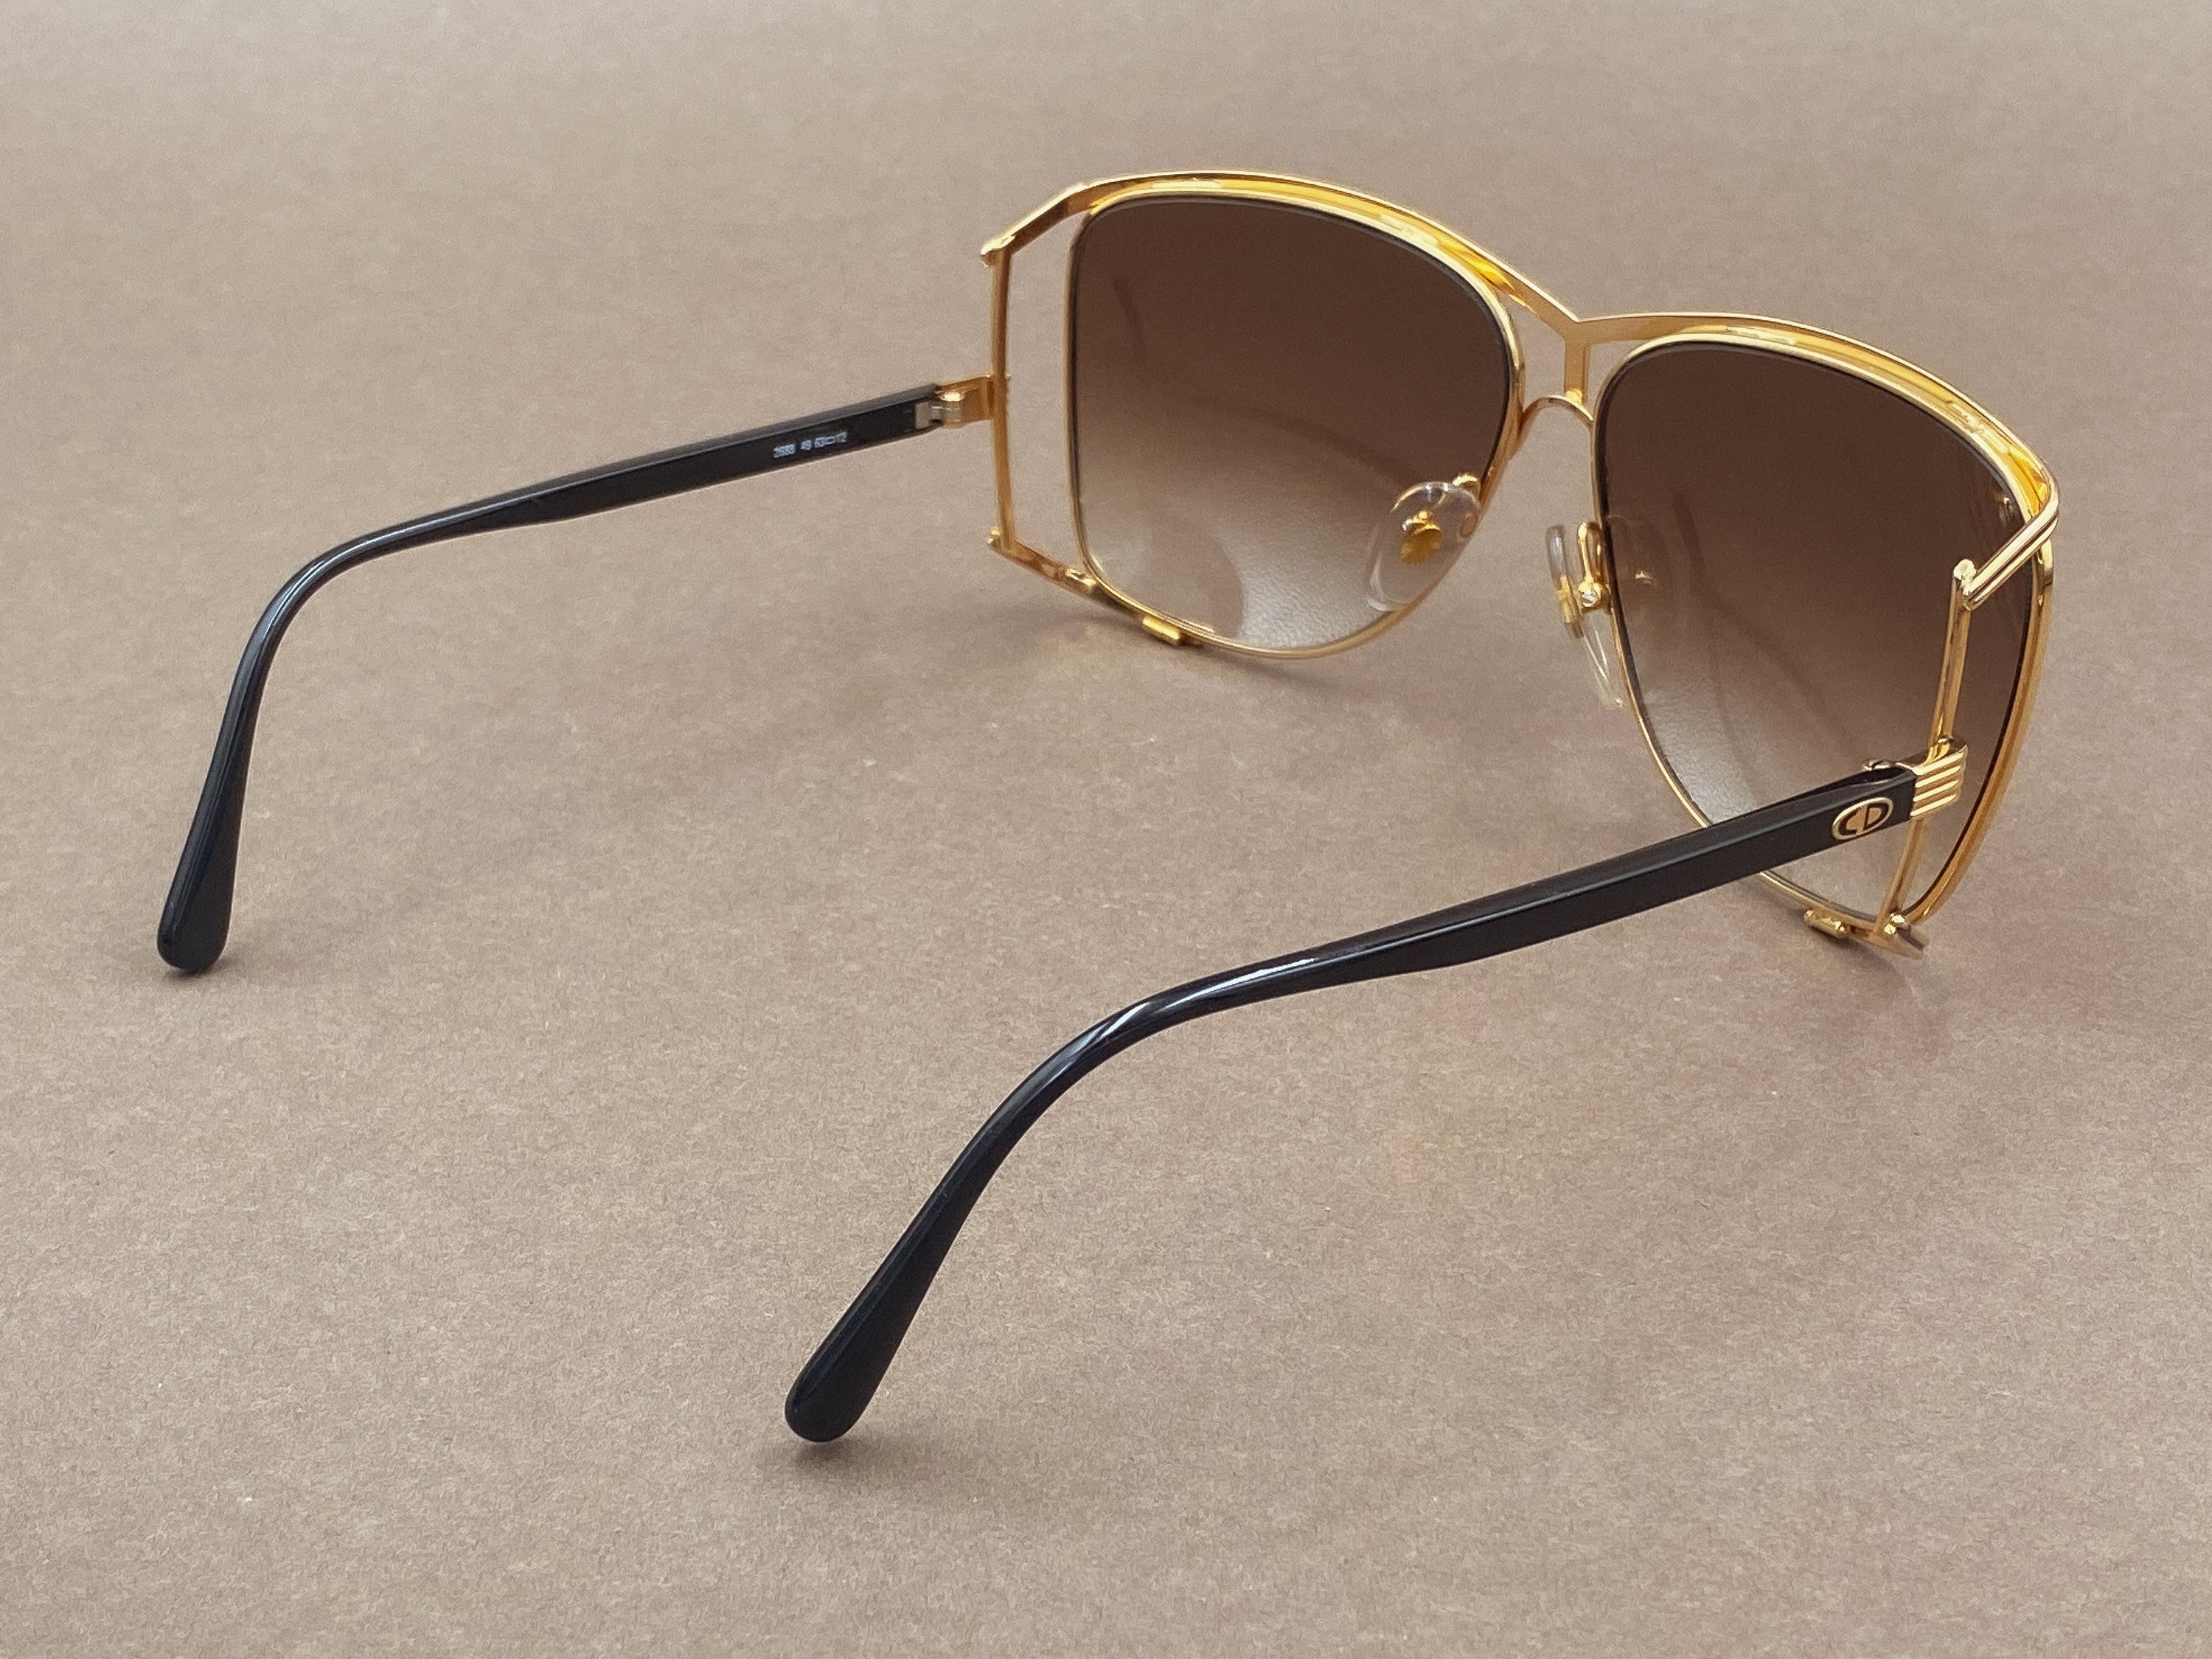 Christian Dior 2688 ladies sunglasses